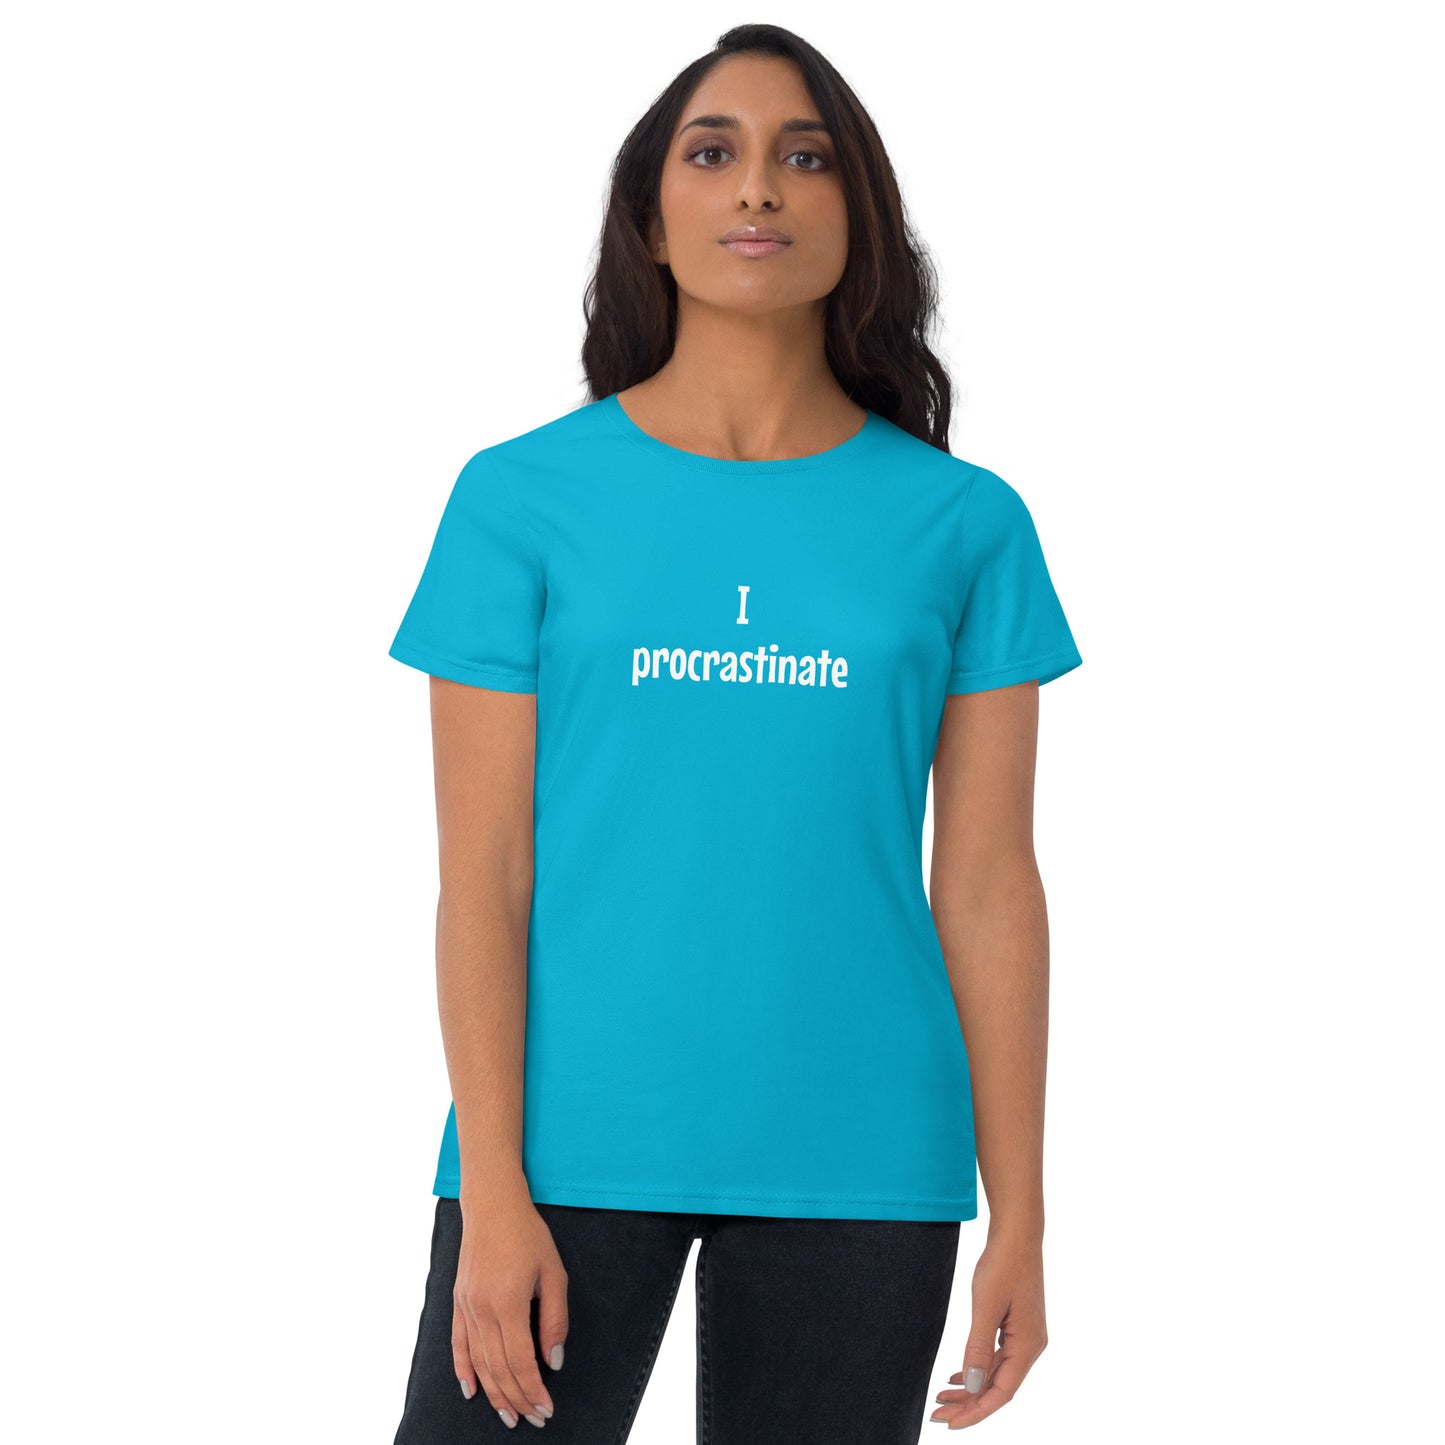 I procrastinate - Women's T-shirt